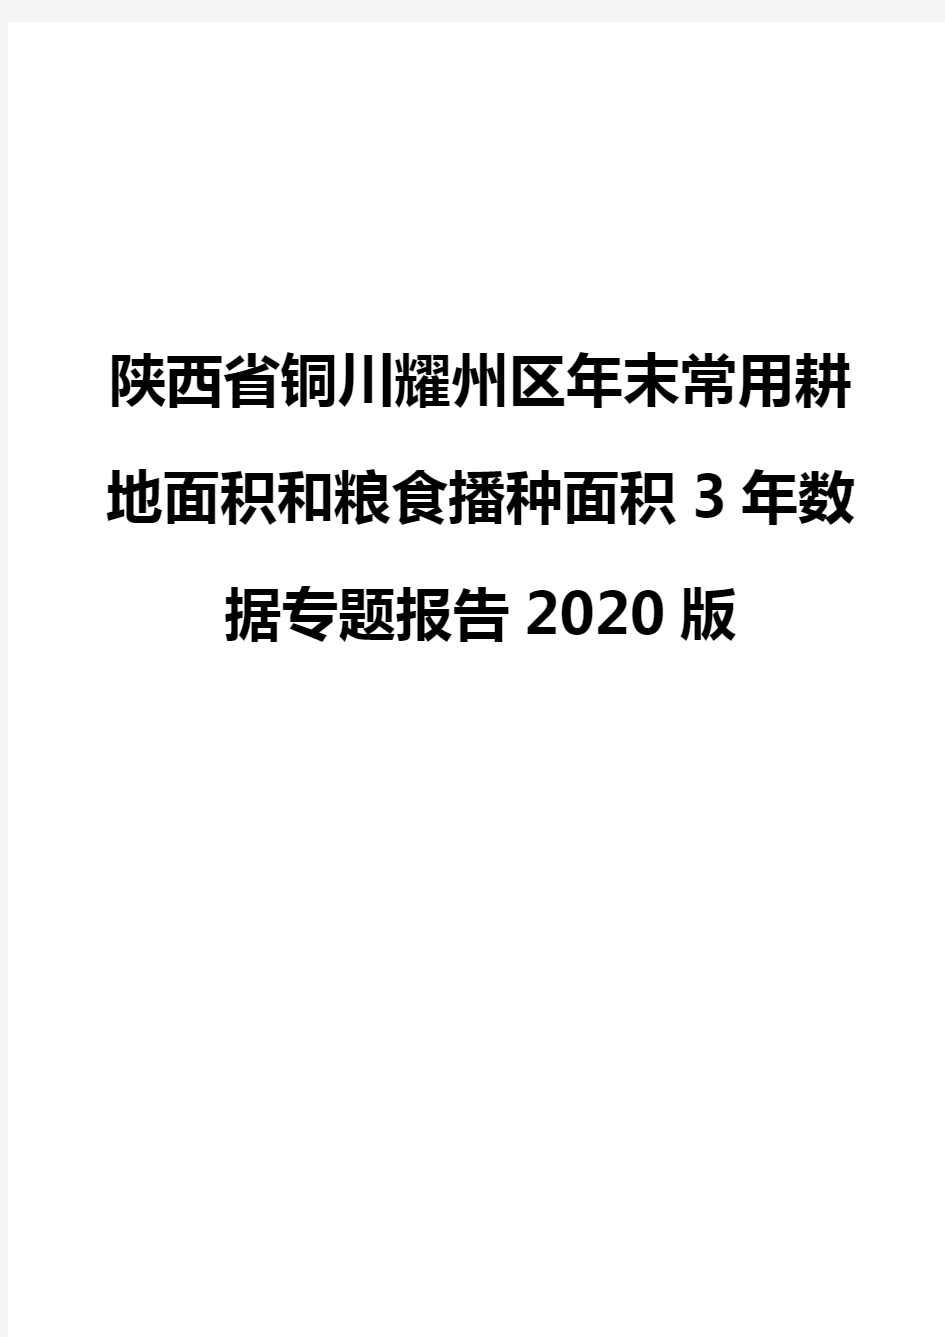 陕西省铜川耀州区年末常用耕地面积和粮食播种面积3年数据专题报告2020版